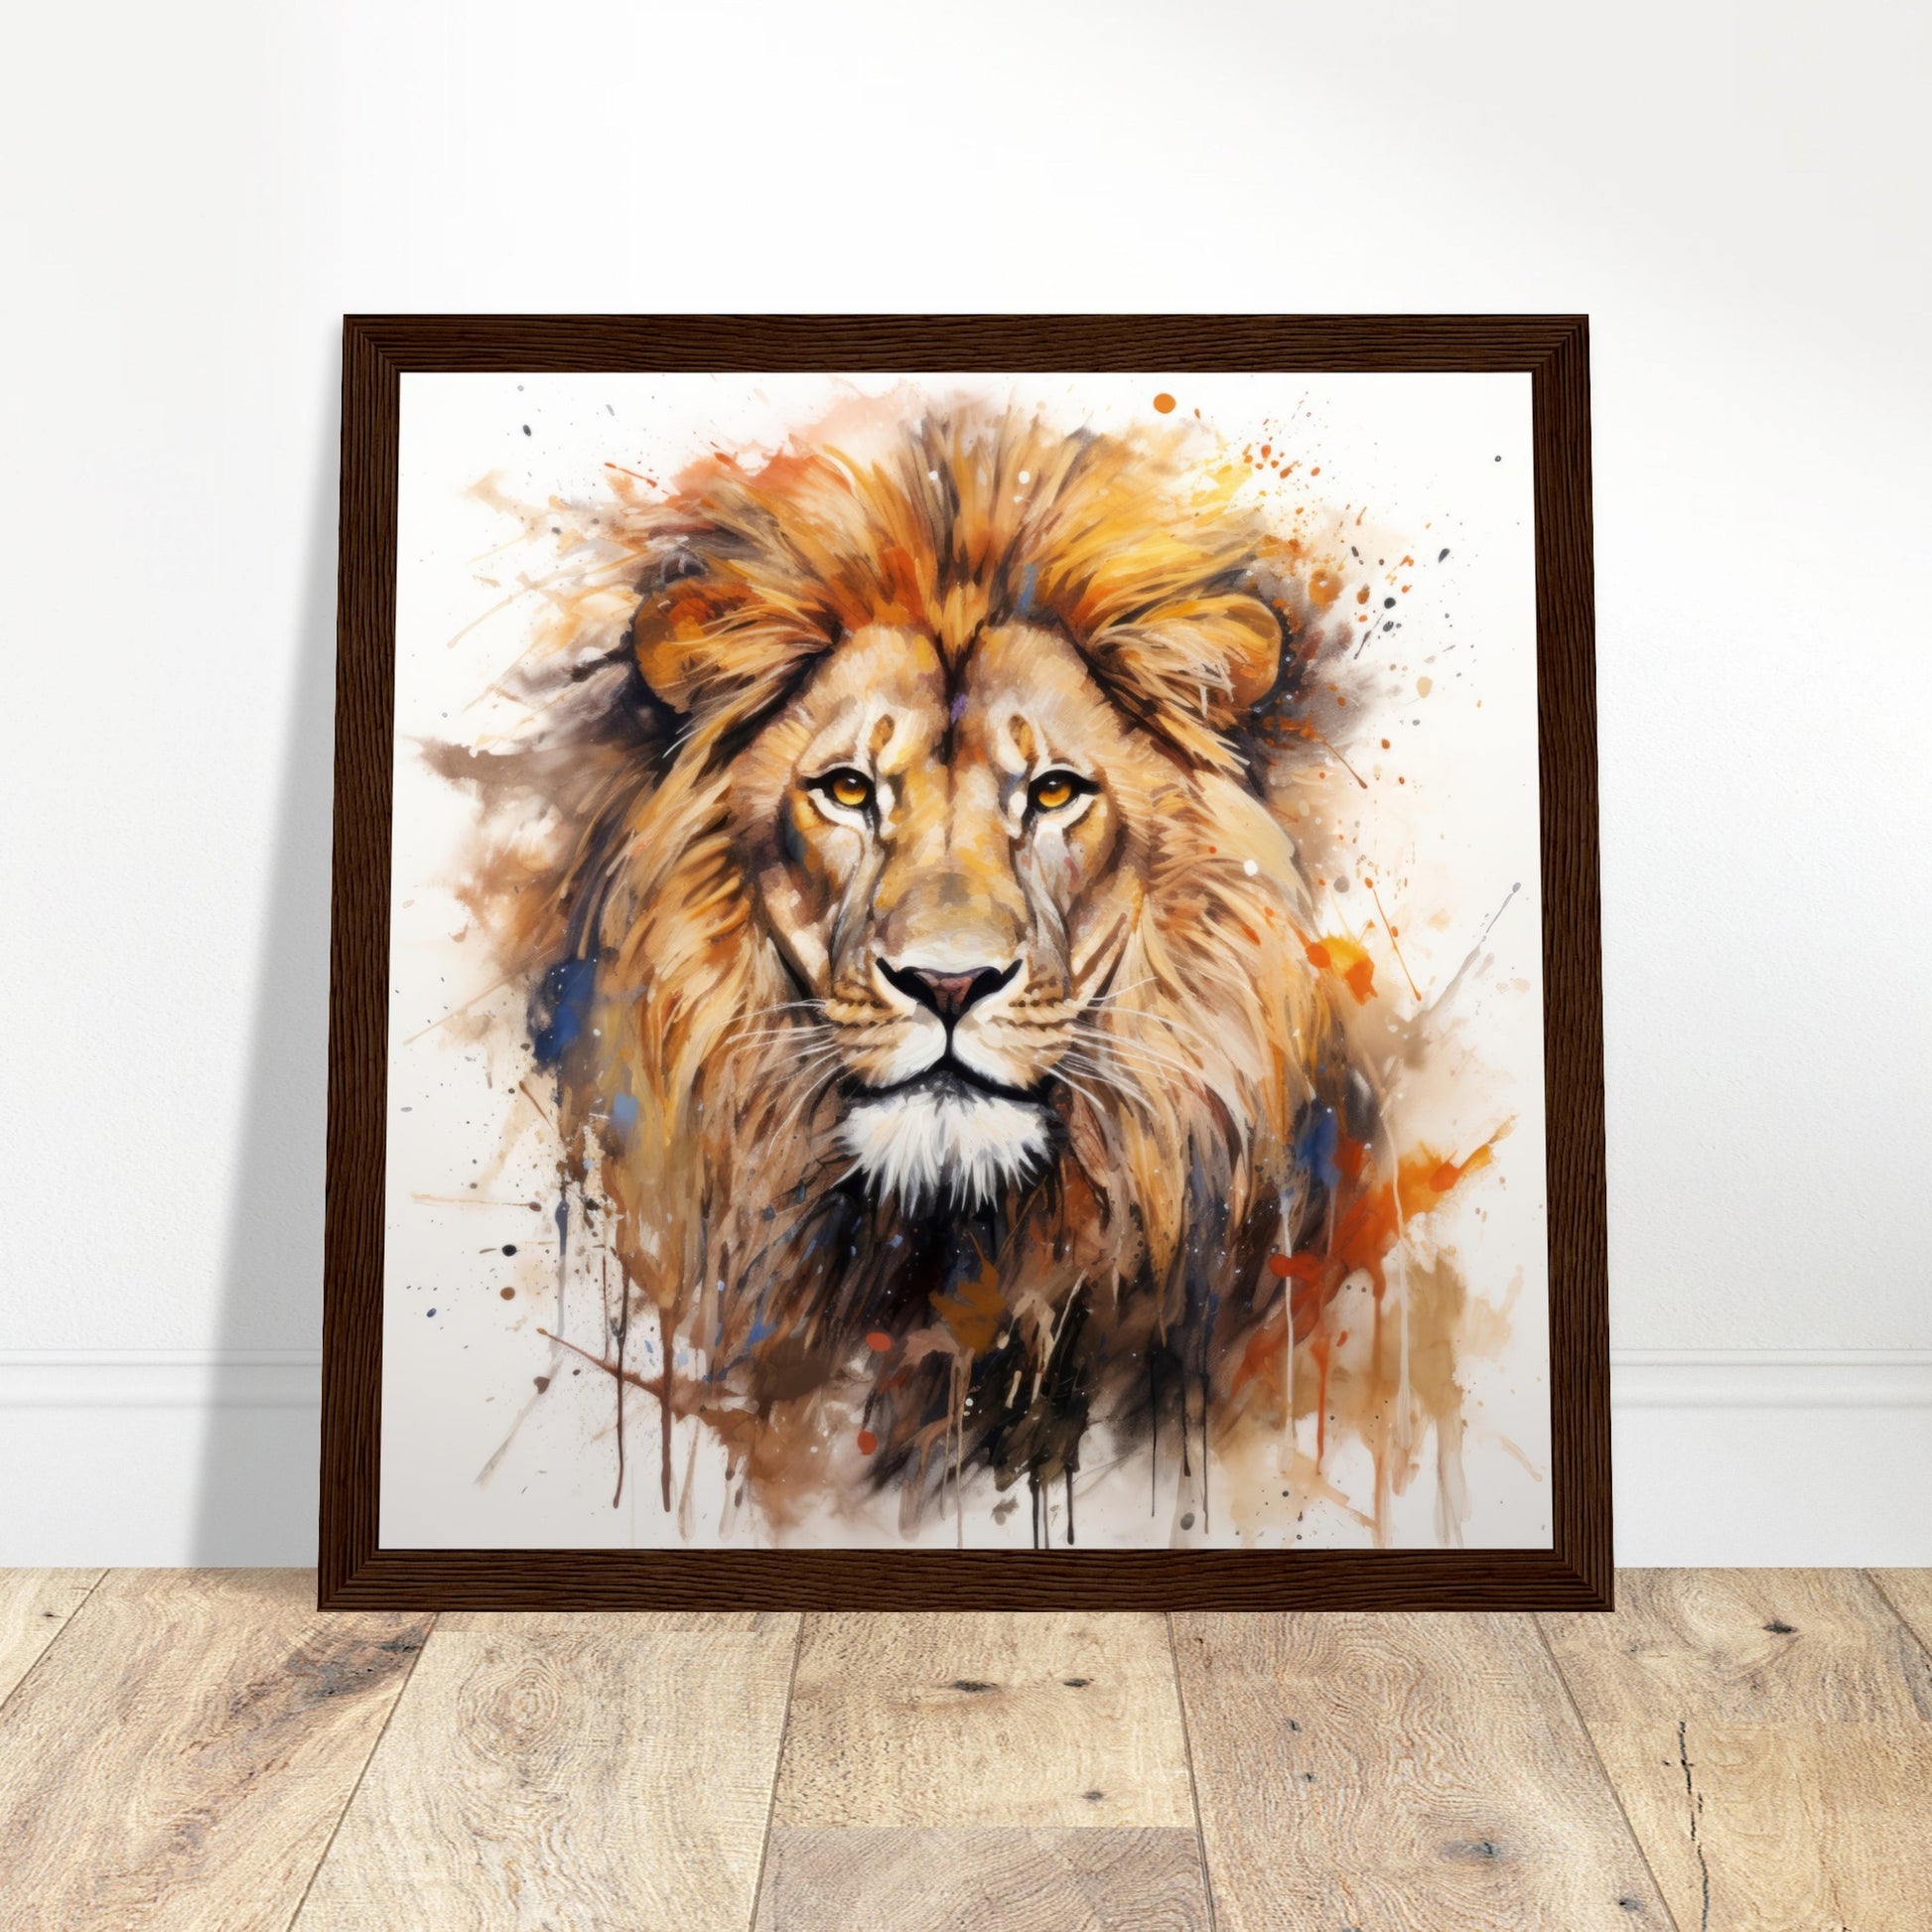 Lion's Roar Art Print - Print Room Ltd White frame 30x30 cm / 12x12"